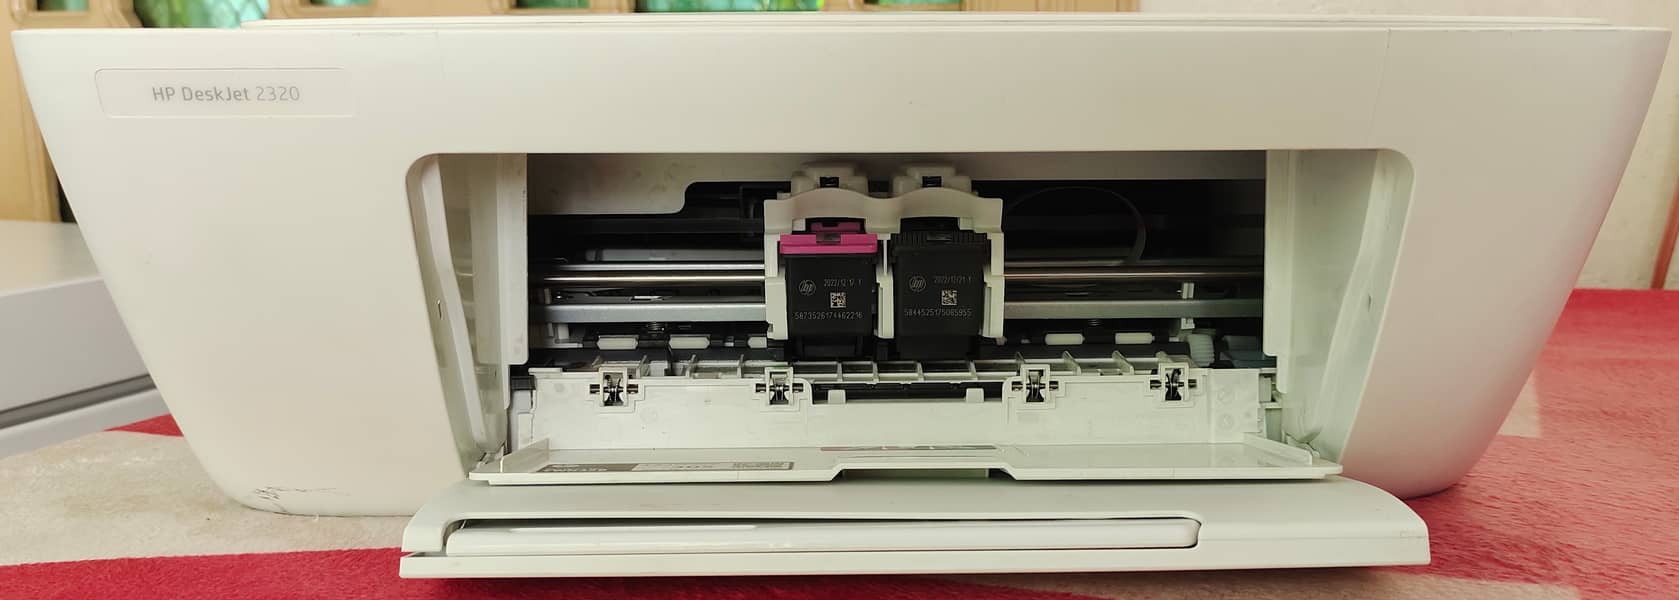 HP deskjet 2320 Print Copy Scan 1